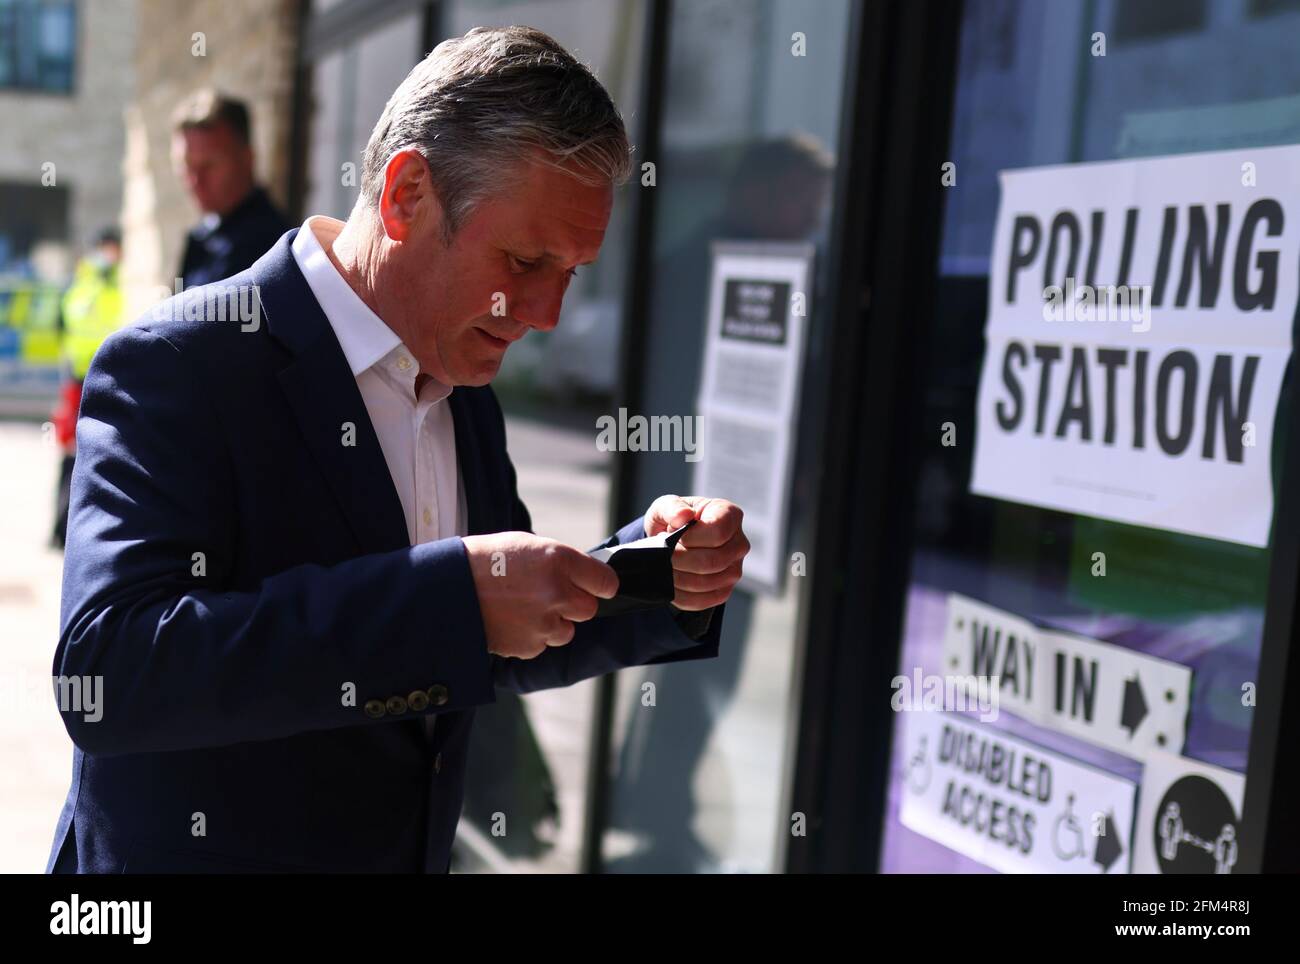 Keir Starmer, leader del Partito laburista britannico, si mette su una maschera protettiva quando arriva a una stazione elettorale per votare durante le elezioni locali, a Londra, in Gran Bretagna, il 6 maggio 2021. REUTERS/Tom Nicholson Foto Stock